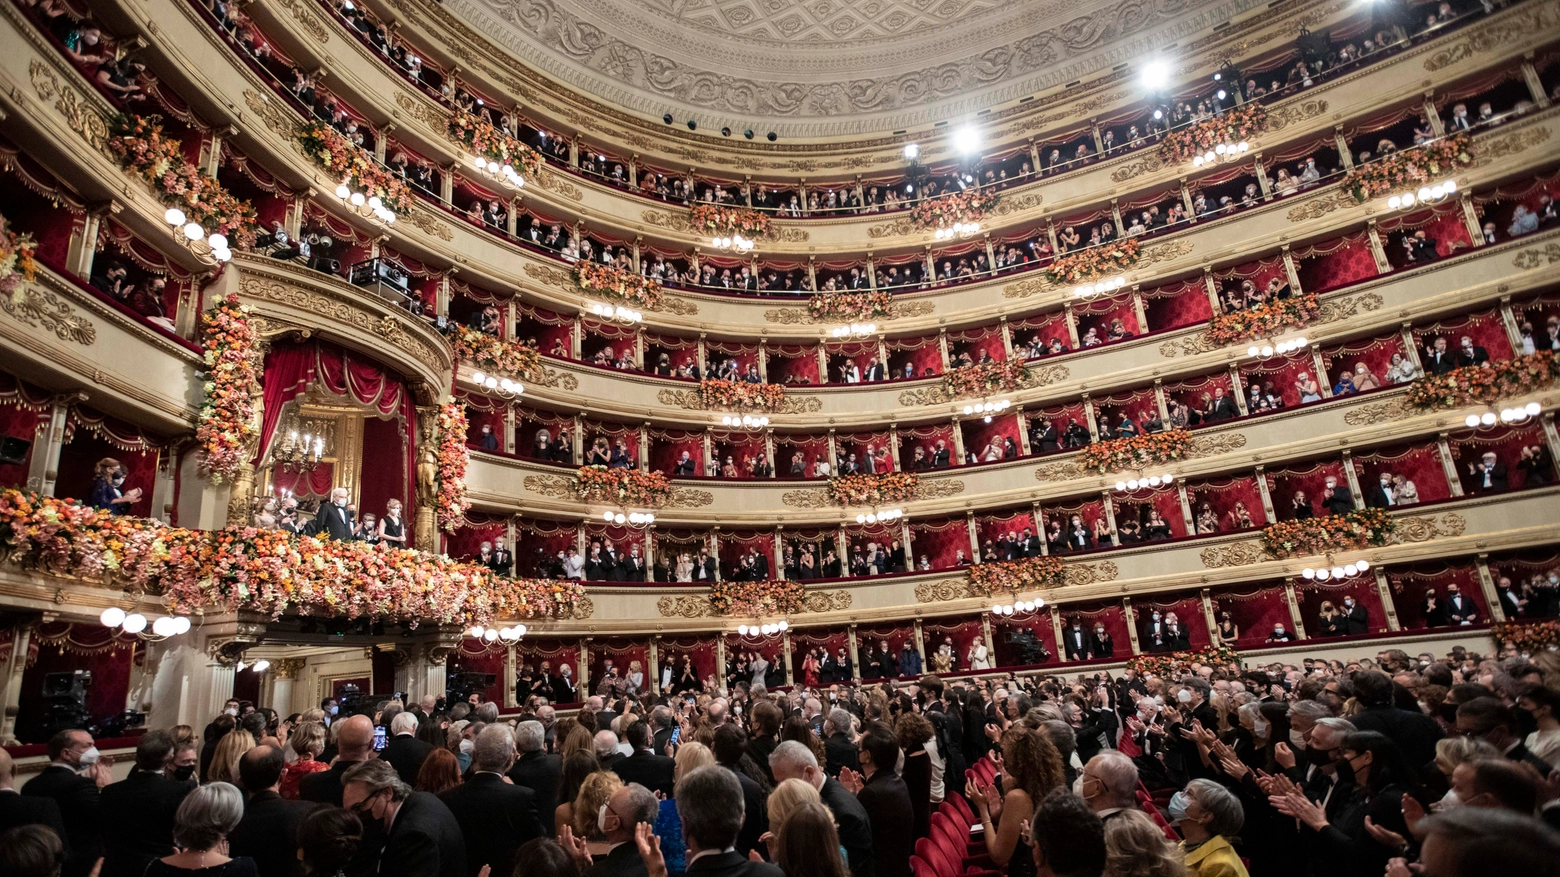 Boris Godunov: cosa sapere sull'opera russa in scena per la Prima della Scala